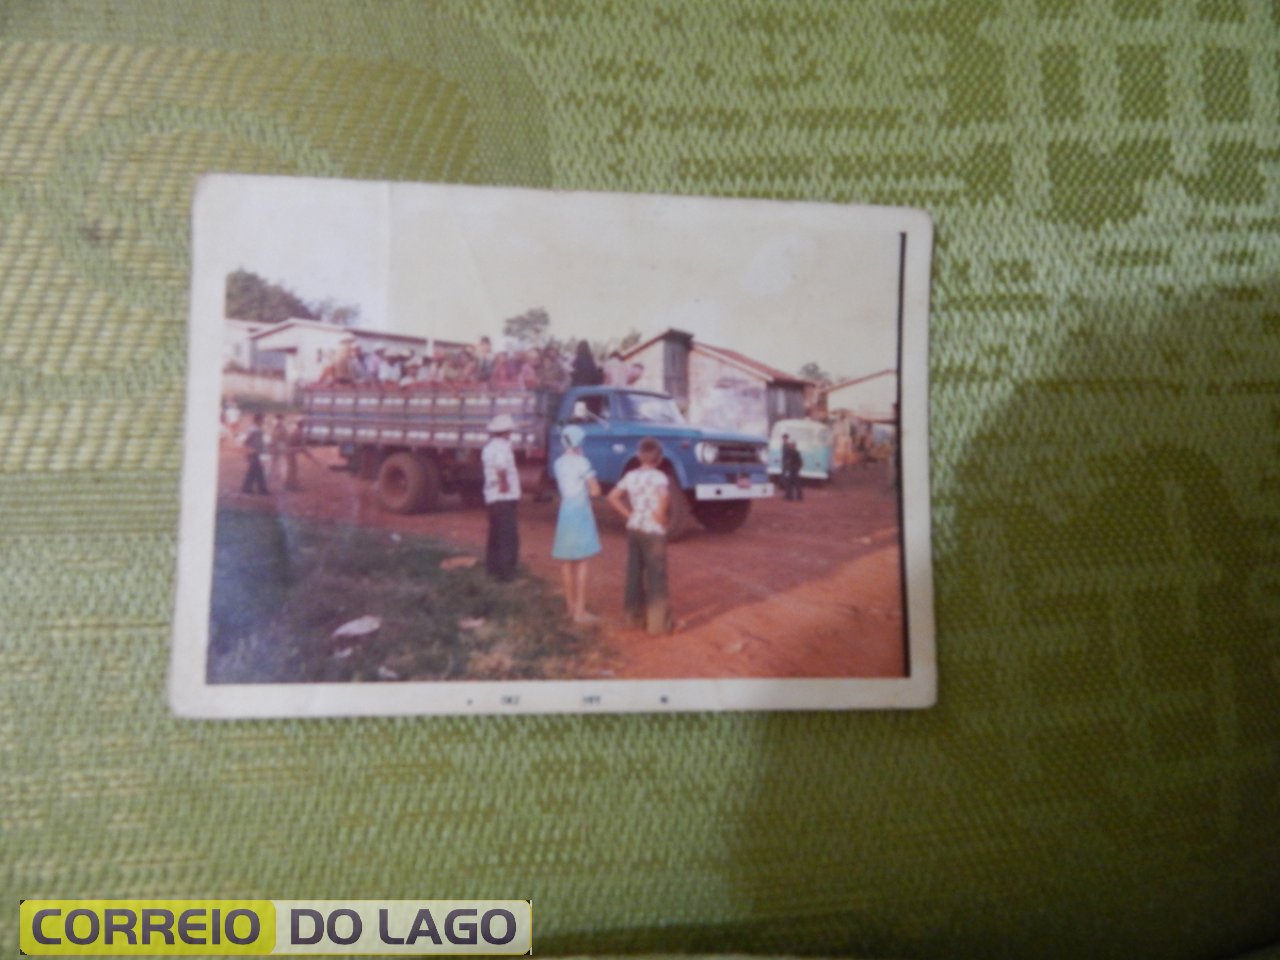 Caminhão do Sr. Marcelino José Galvão transportando os boias-frias ao trabalho. Local: centro de Vera Cruz do Oeste. Década de 1970.